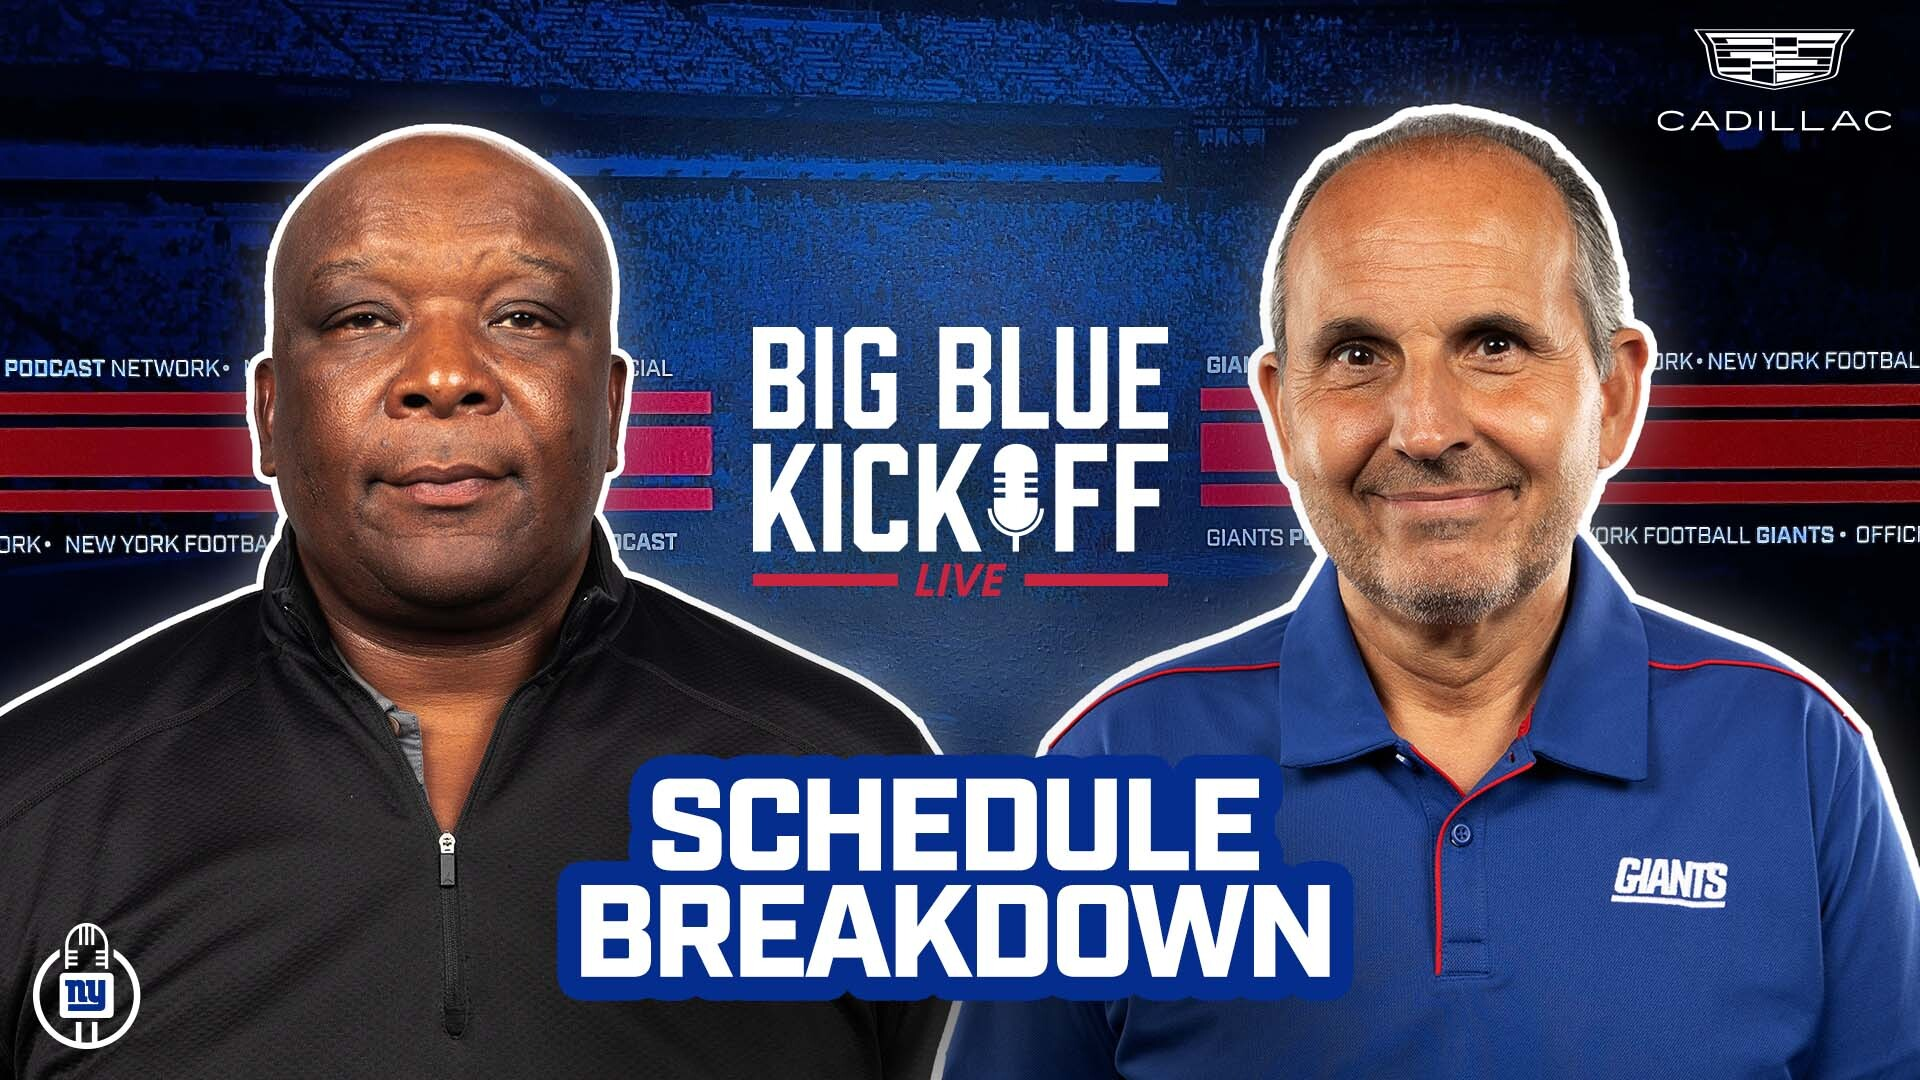 Big Blue Kickoff Live 5/17 | Schedule Breakdown